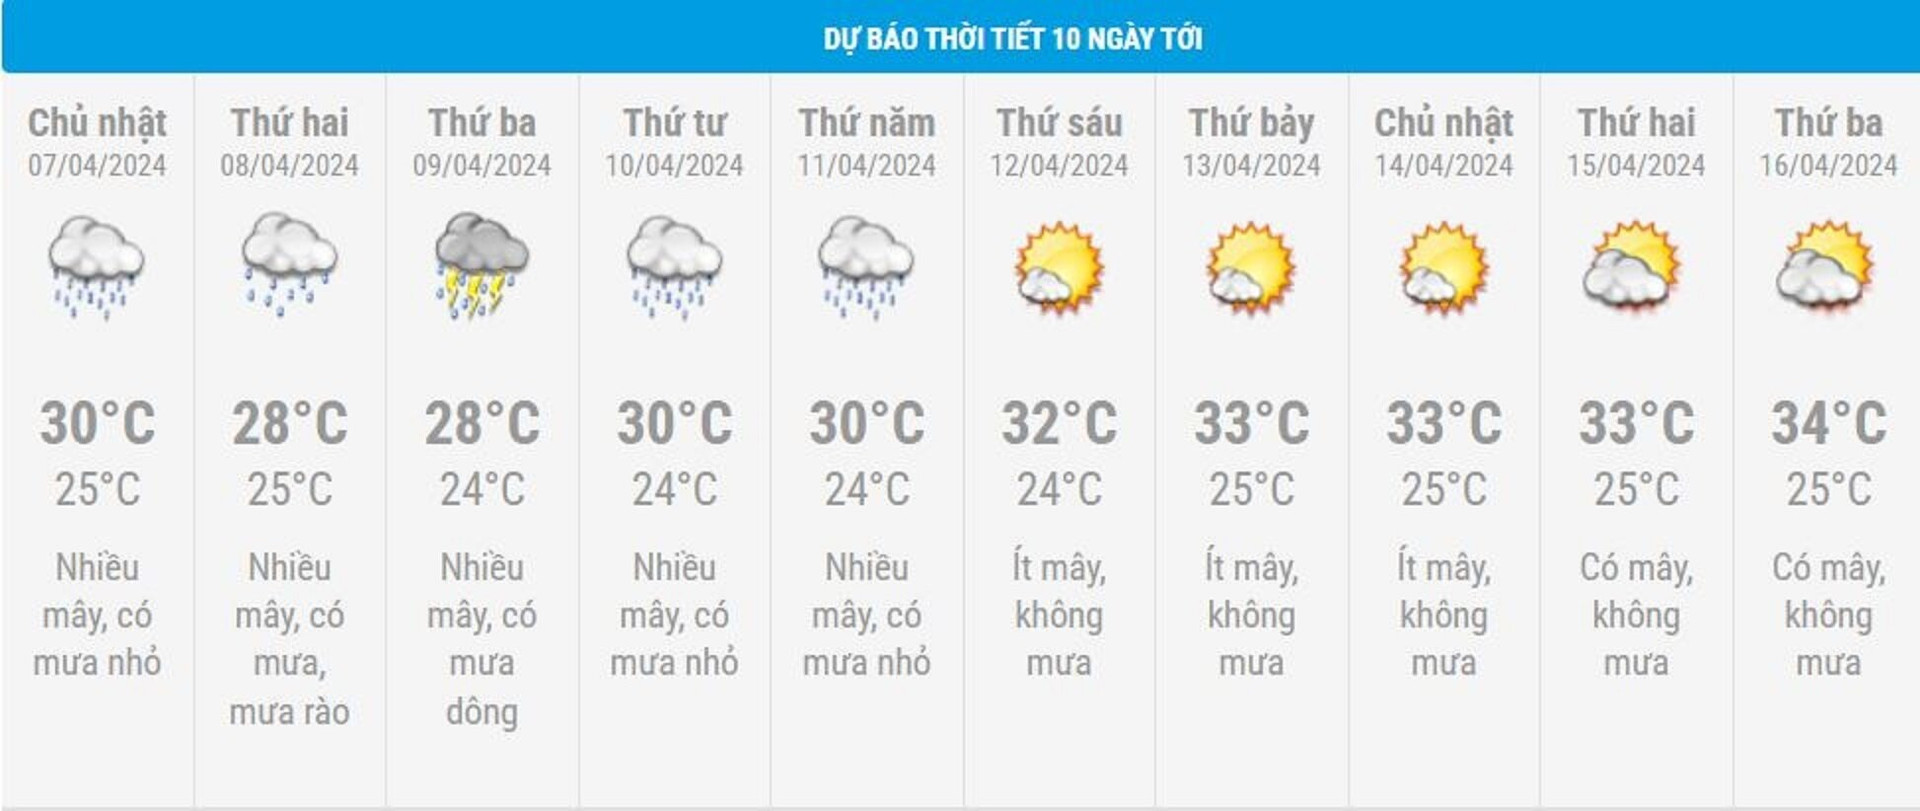 Dự báo thời tiết 10 ngày từ đêm 6/4 đến 16/4 cho Hà Nội và cả nước - 2